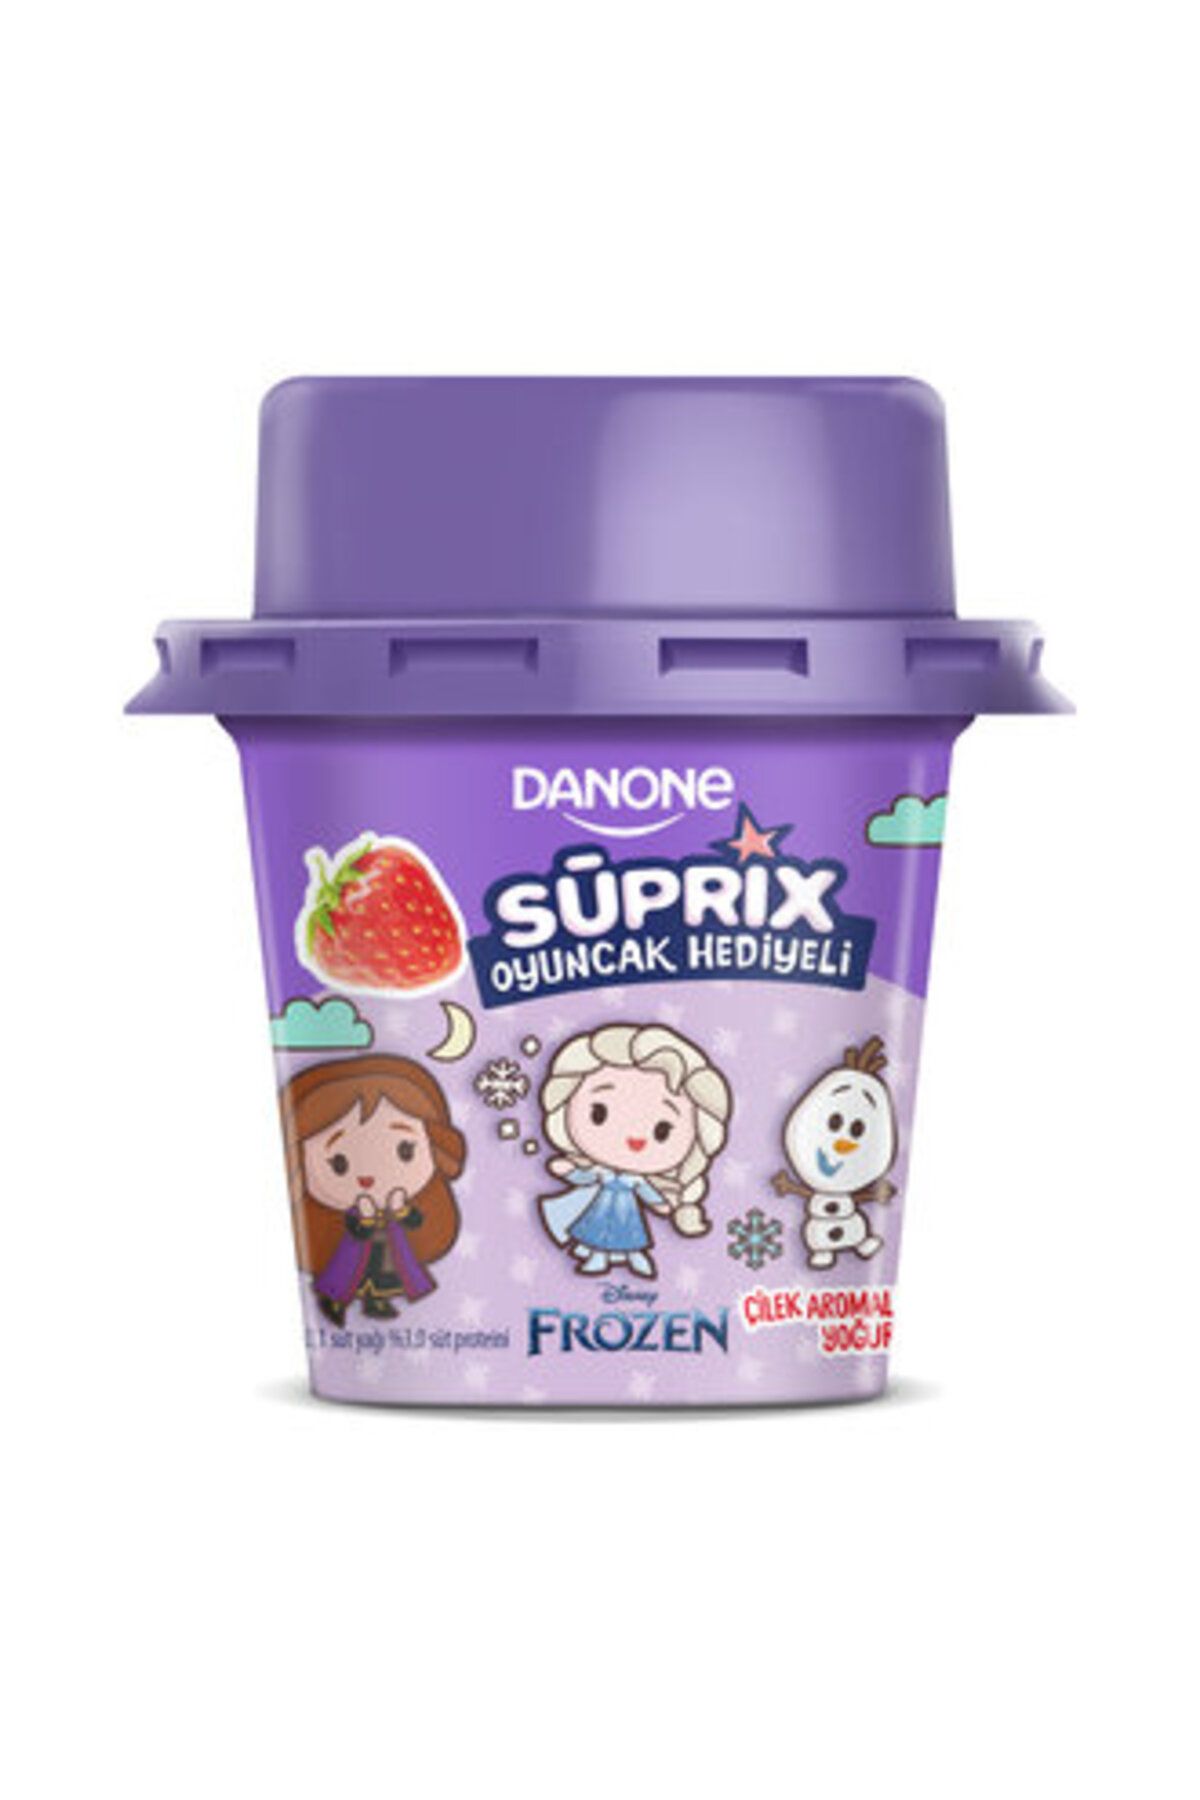 Danone Süprix Frozen Oyuncak Hediyeli Çilek Aromalı Yoğurt 90 Gr